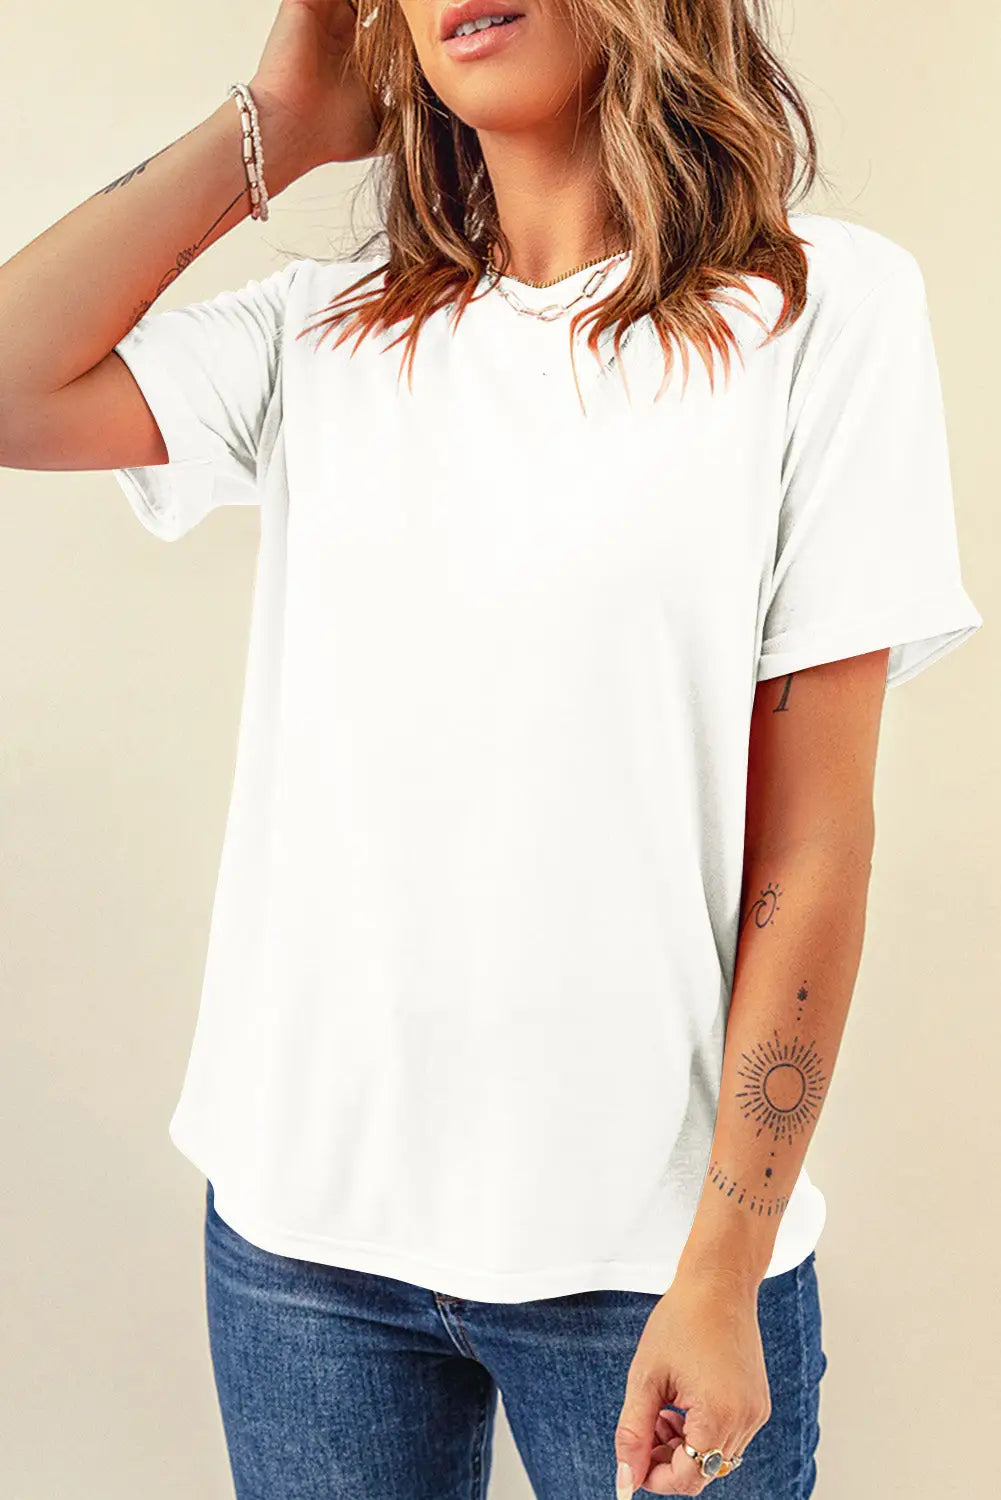 Gray casual plain crew neck tee - white / 2xl / 62% polyester + 32% cotton + 6% elastane - t-shirts